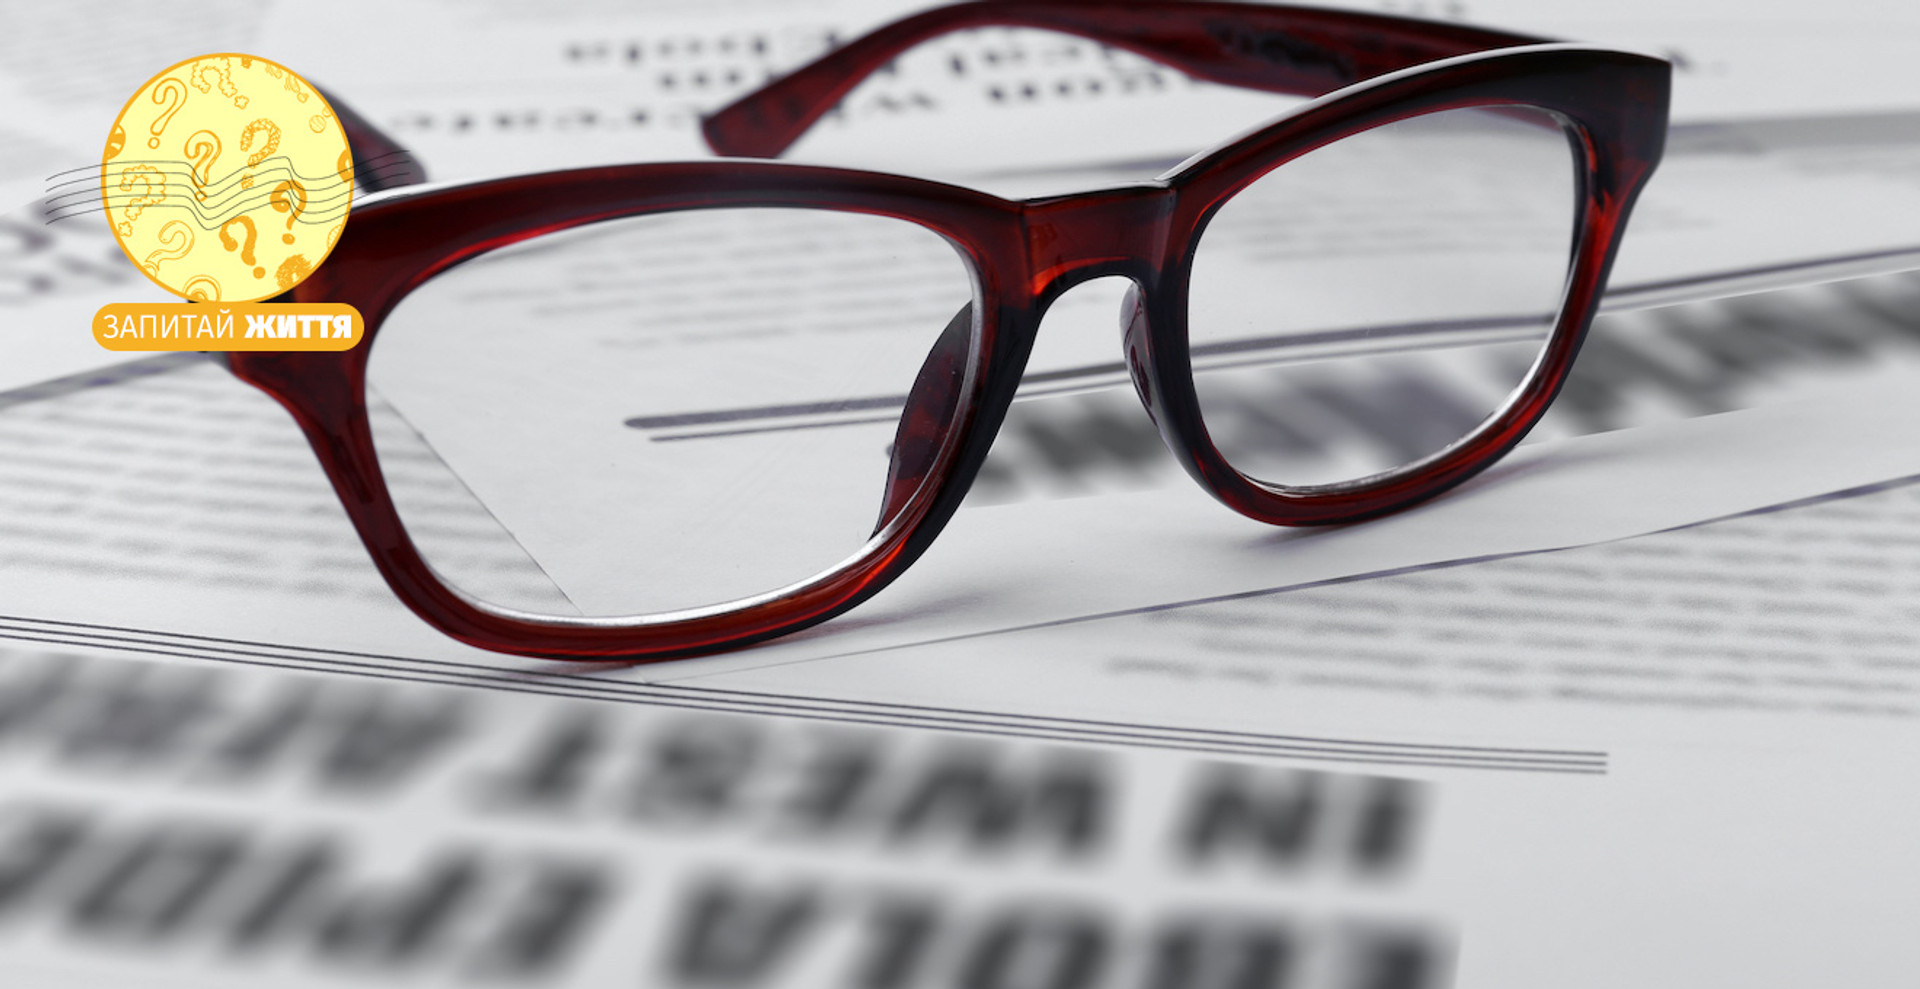 Чи можуть окуляри погіршити зір при тривалому використанні?